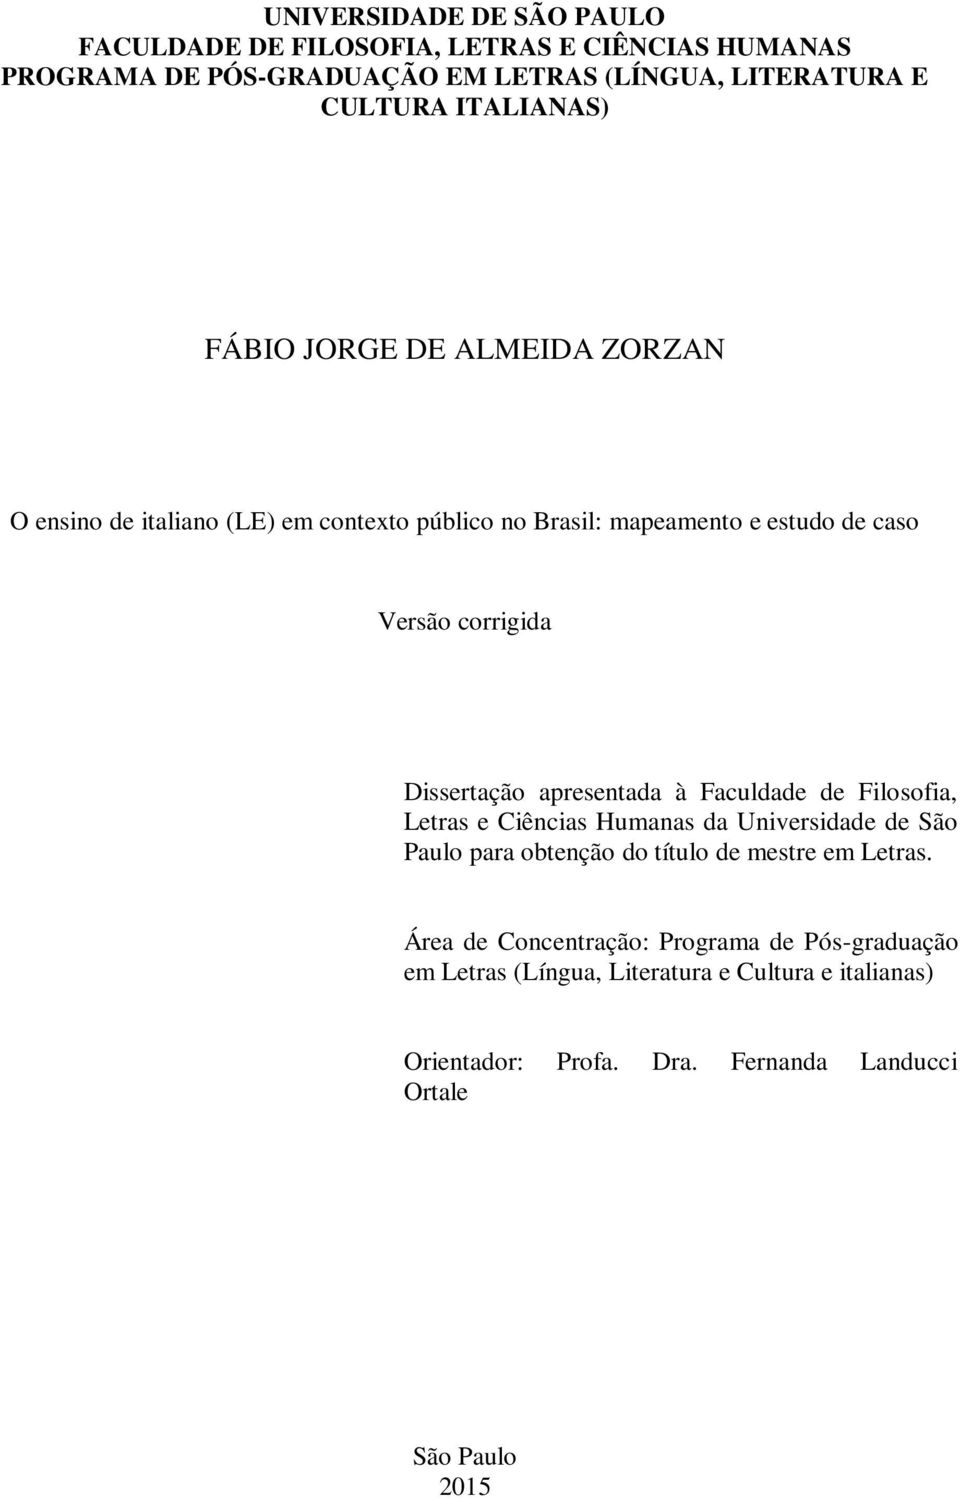 Dissertação apresentada à Faculdade de Filosofia, Letras e Ciências Humanas da Universidade de São Paulo para obtenção do título de mestre em Letras.